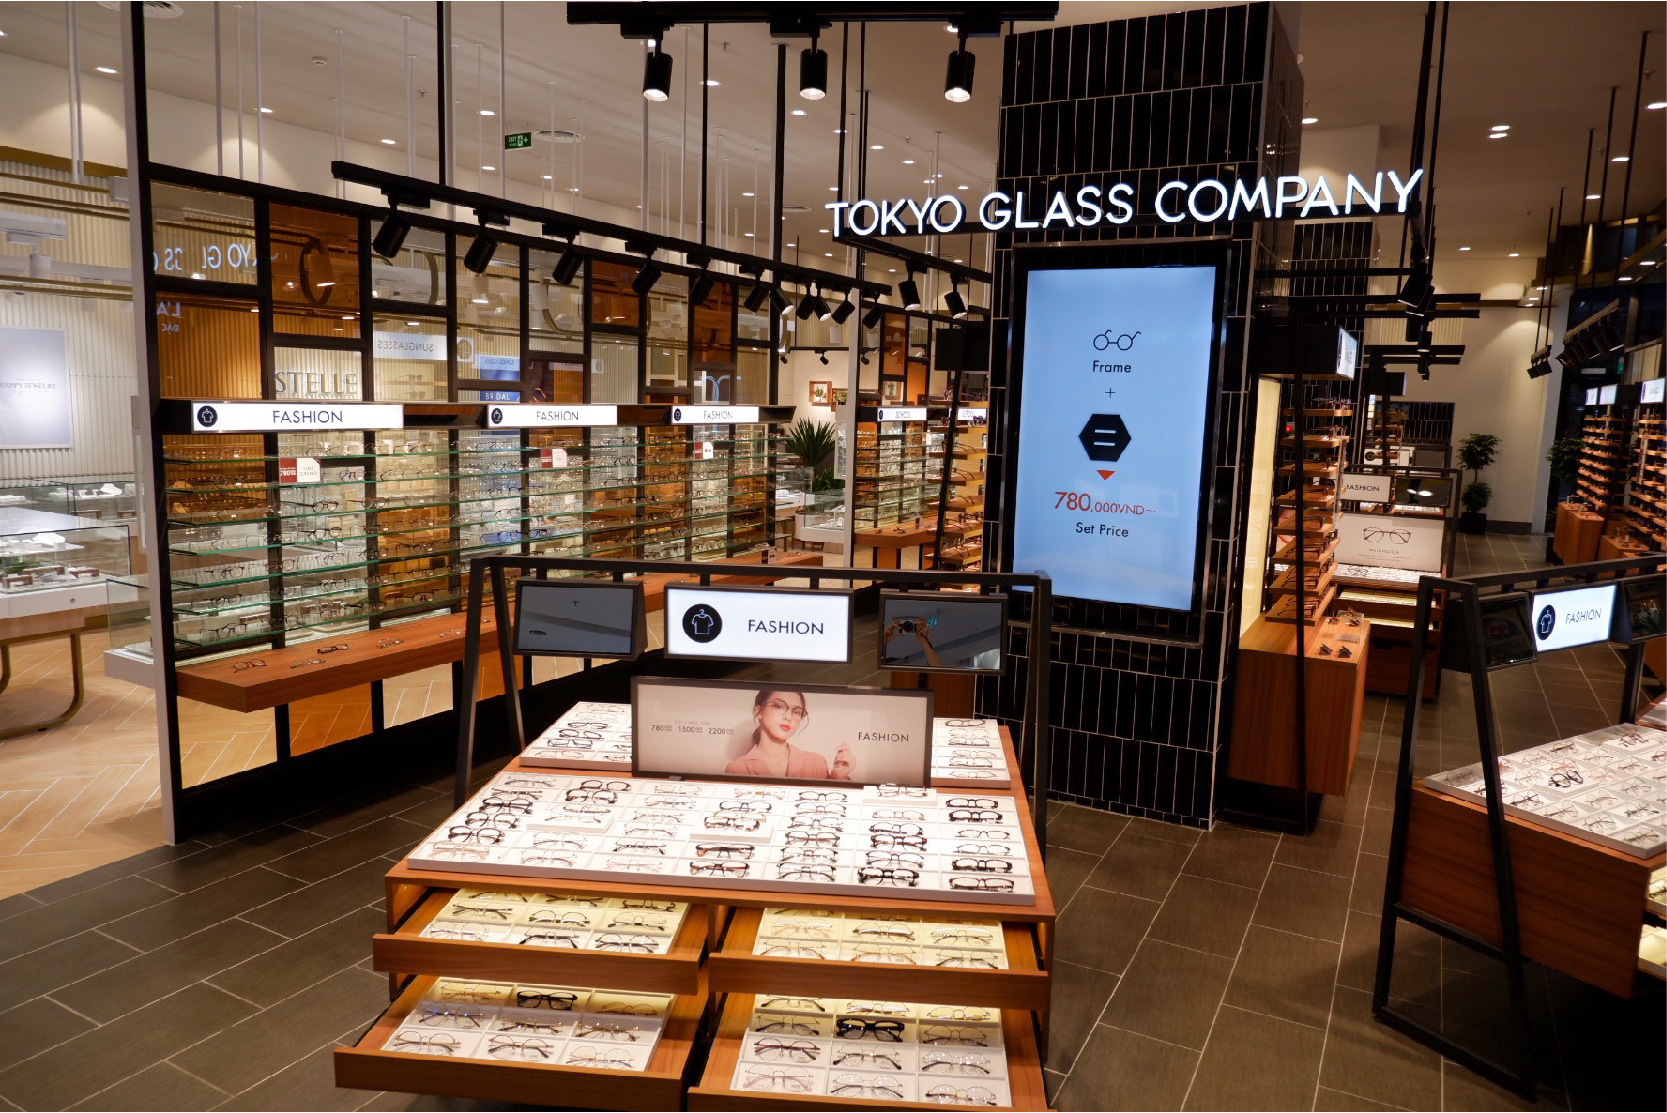 TOKYO GLASS COMPANY CHÍNH THỨC CÓ MẶT TẠI HẢI PHÒNG